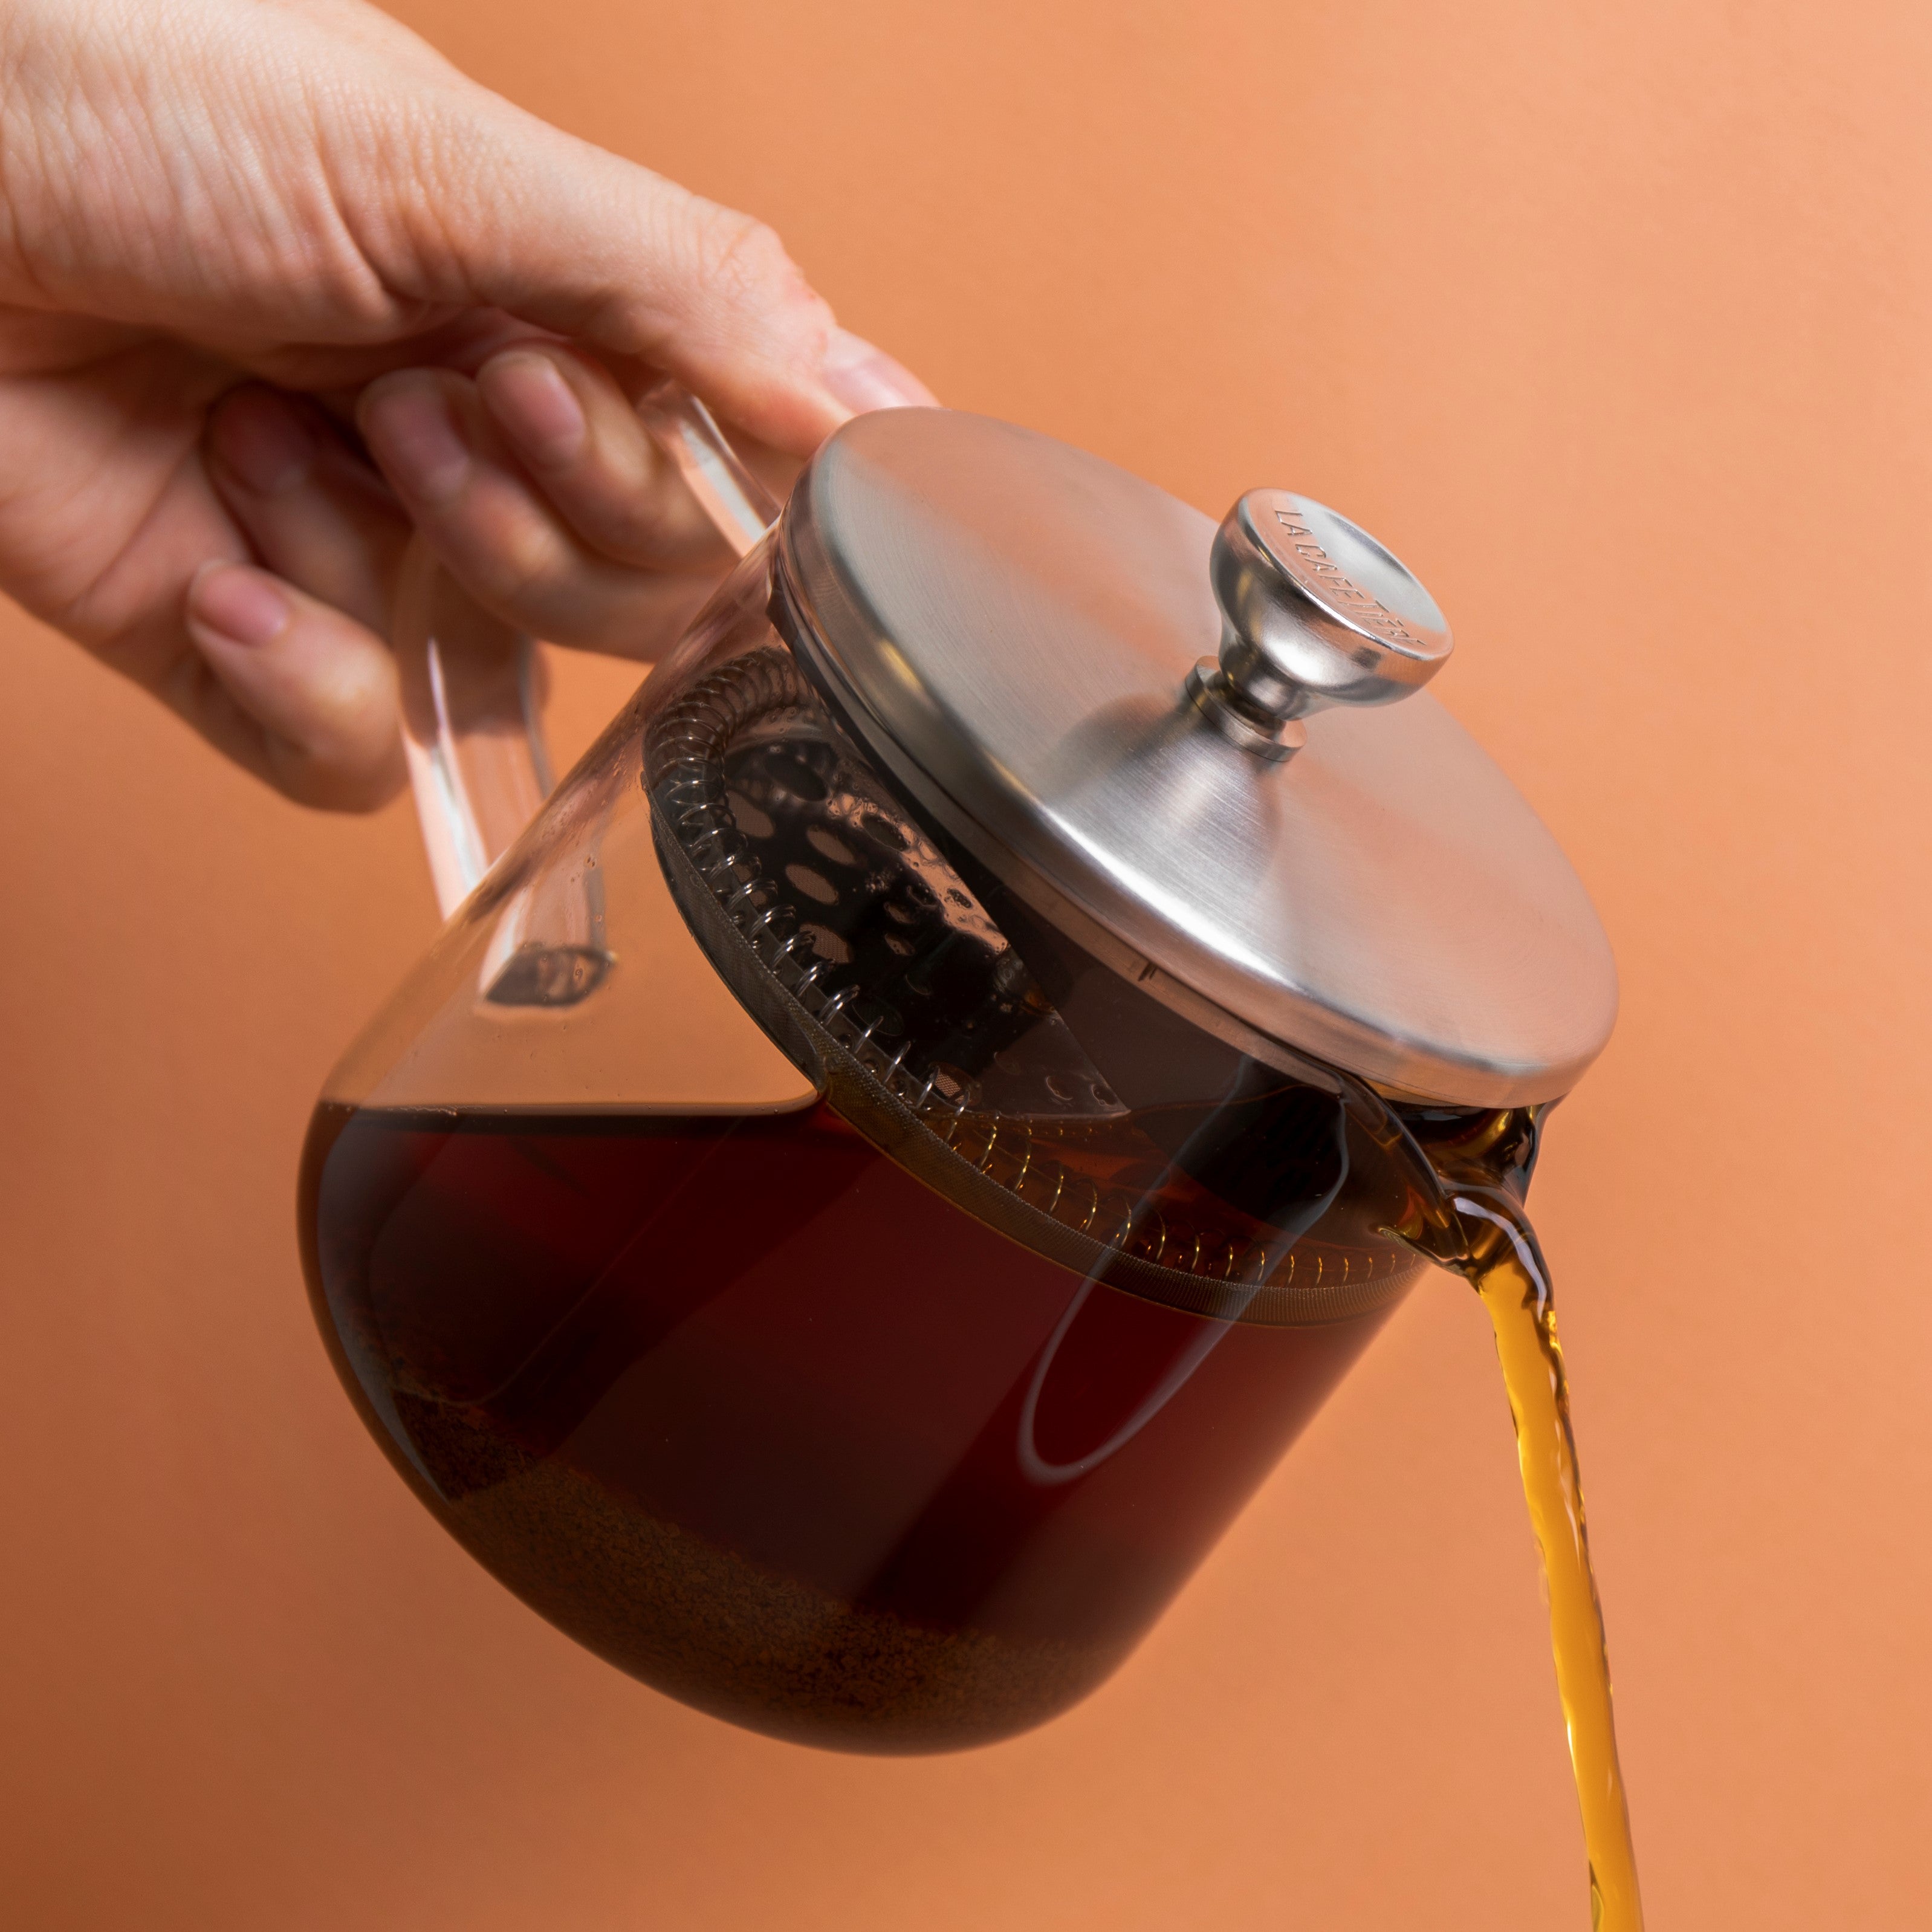 La Cafetière Kericho 2 Cup Glass Infuser Teapot